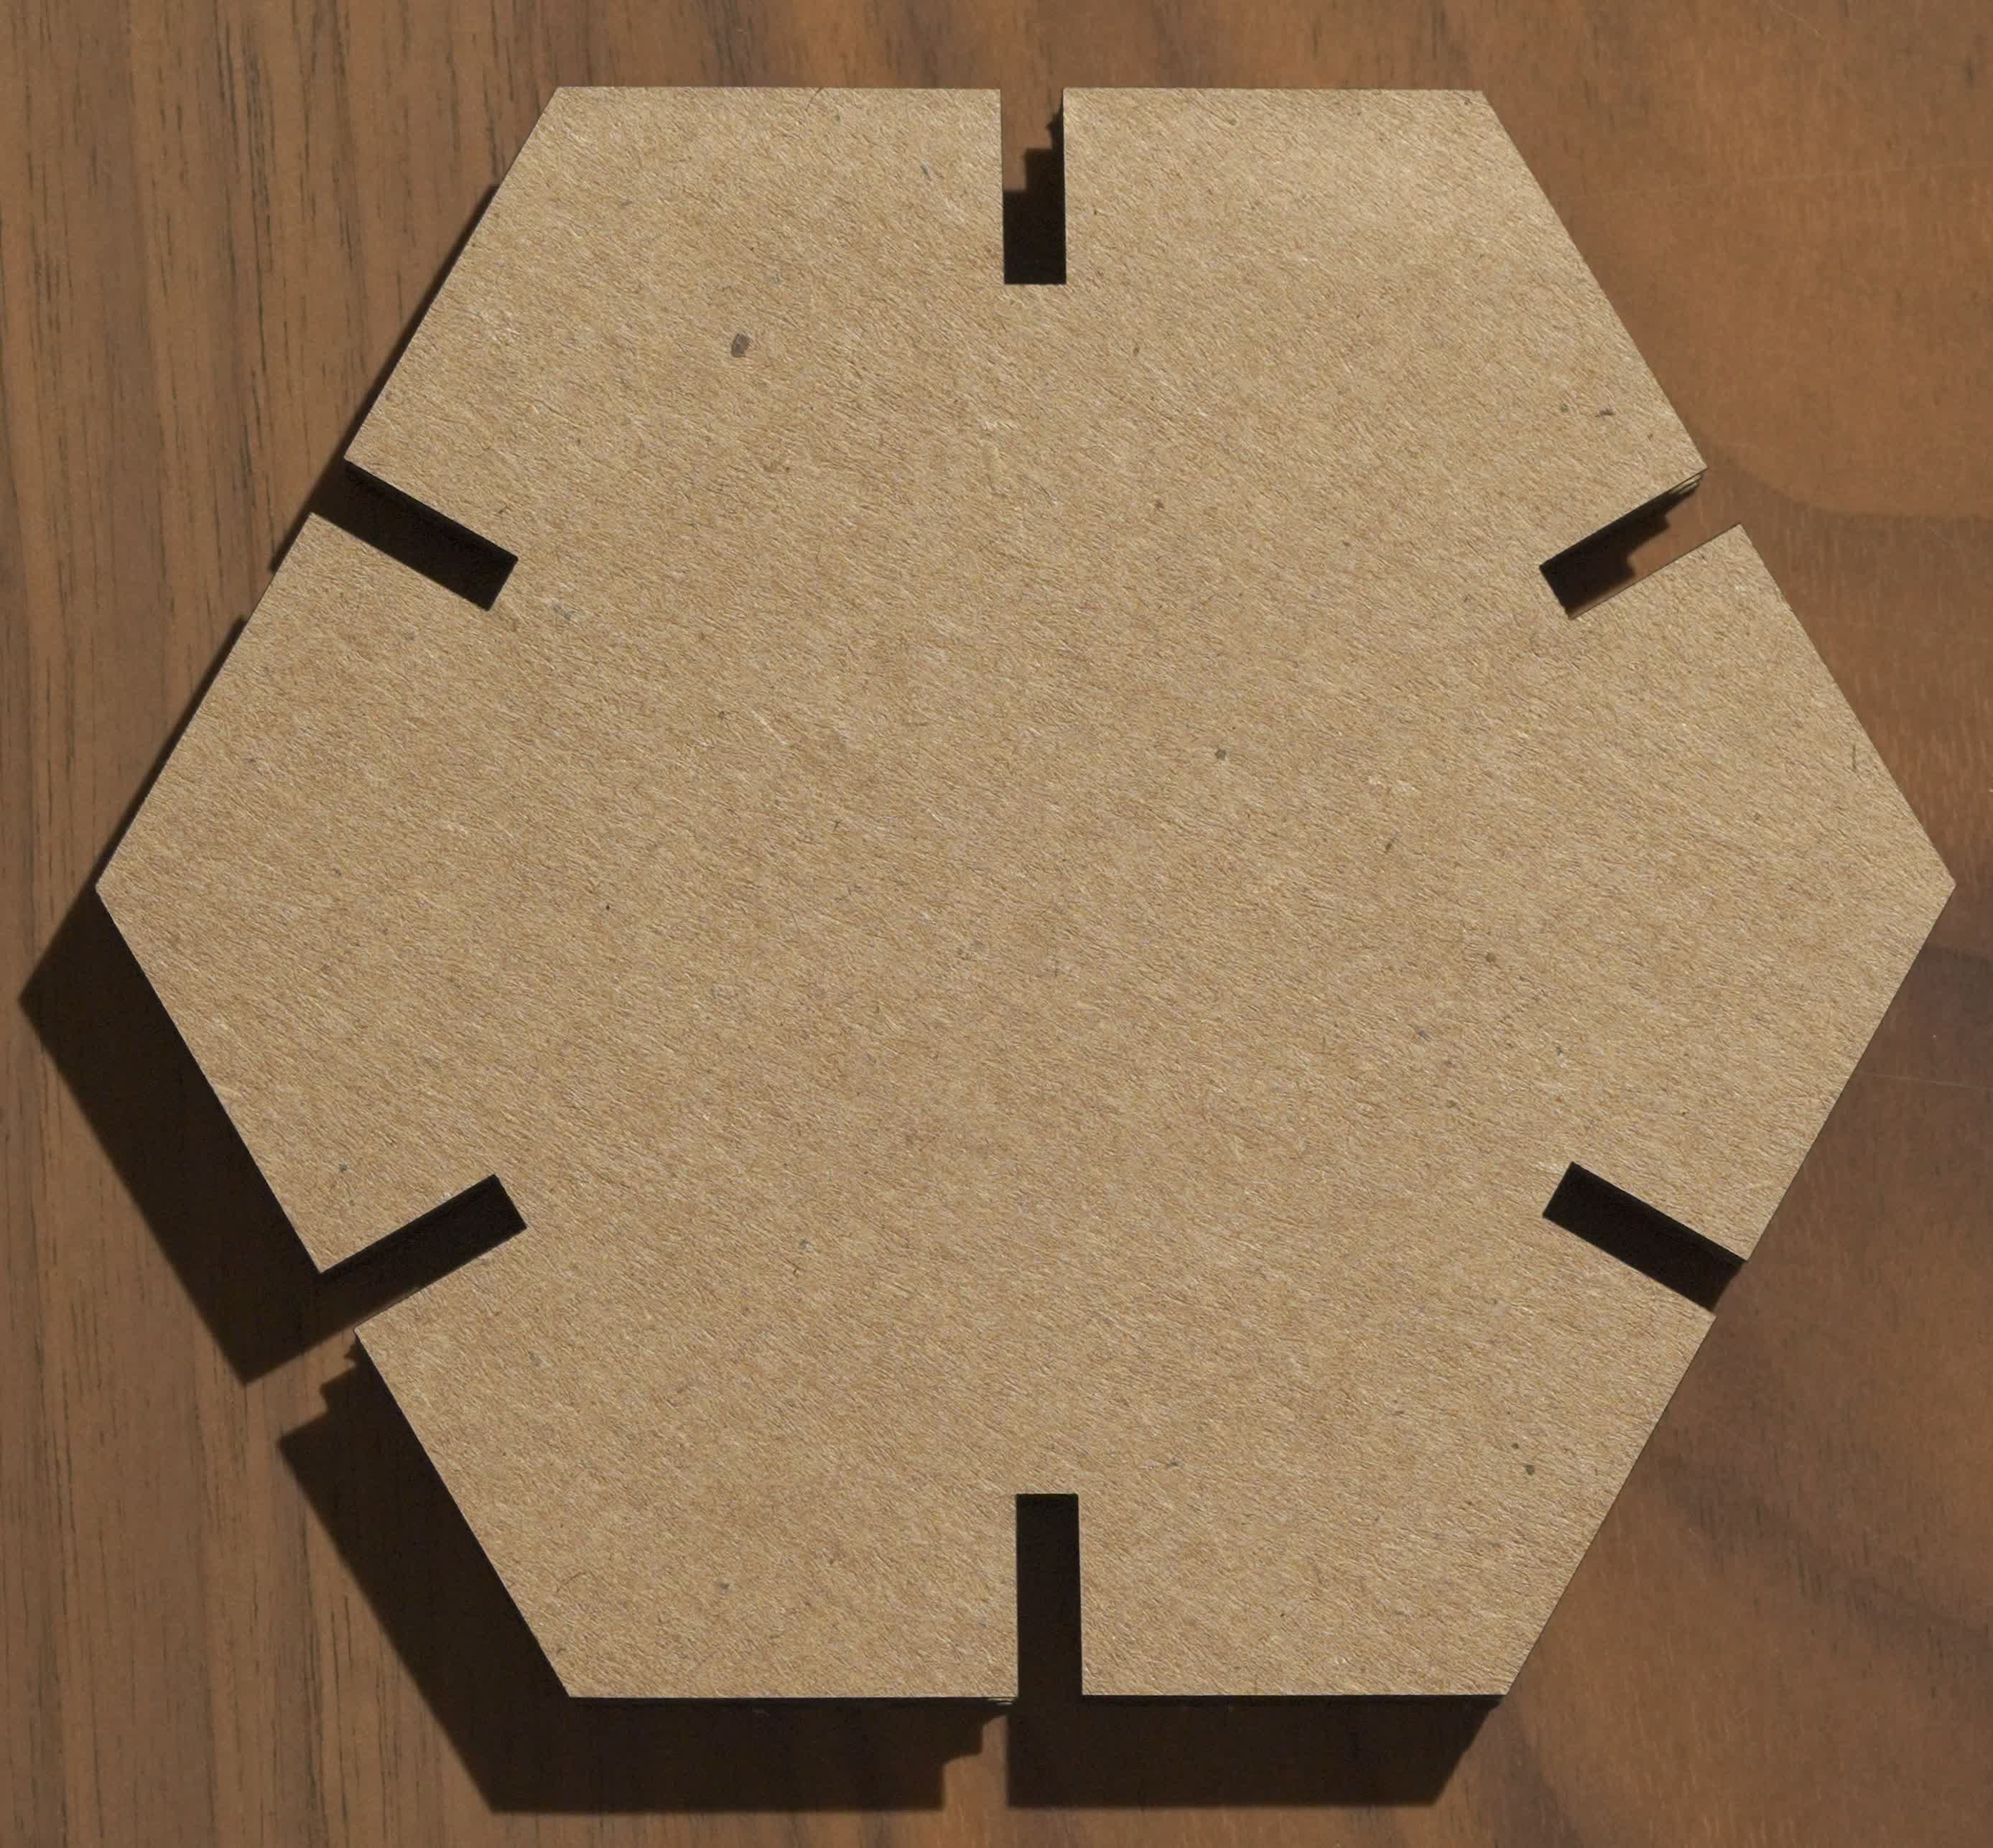 Hexagon piece